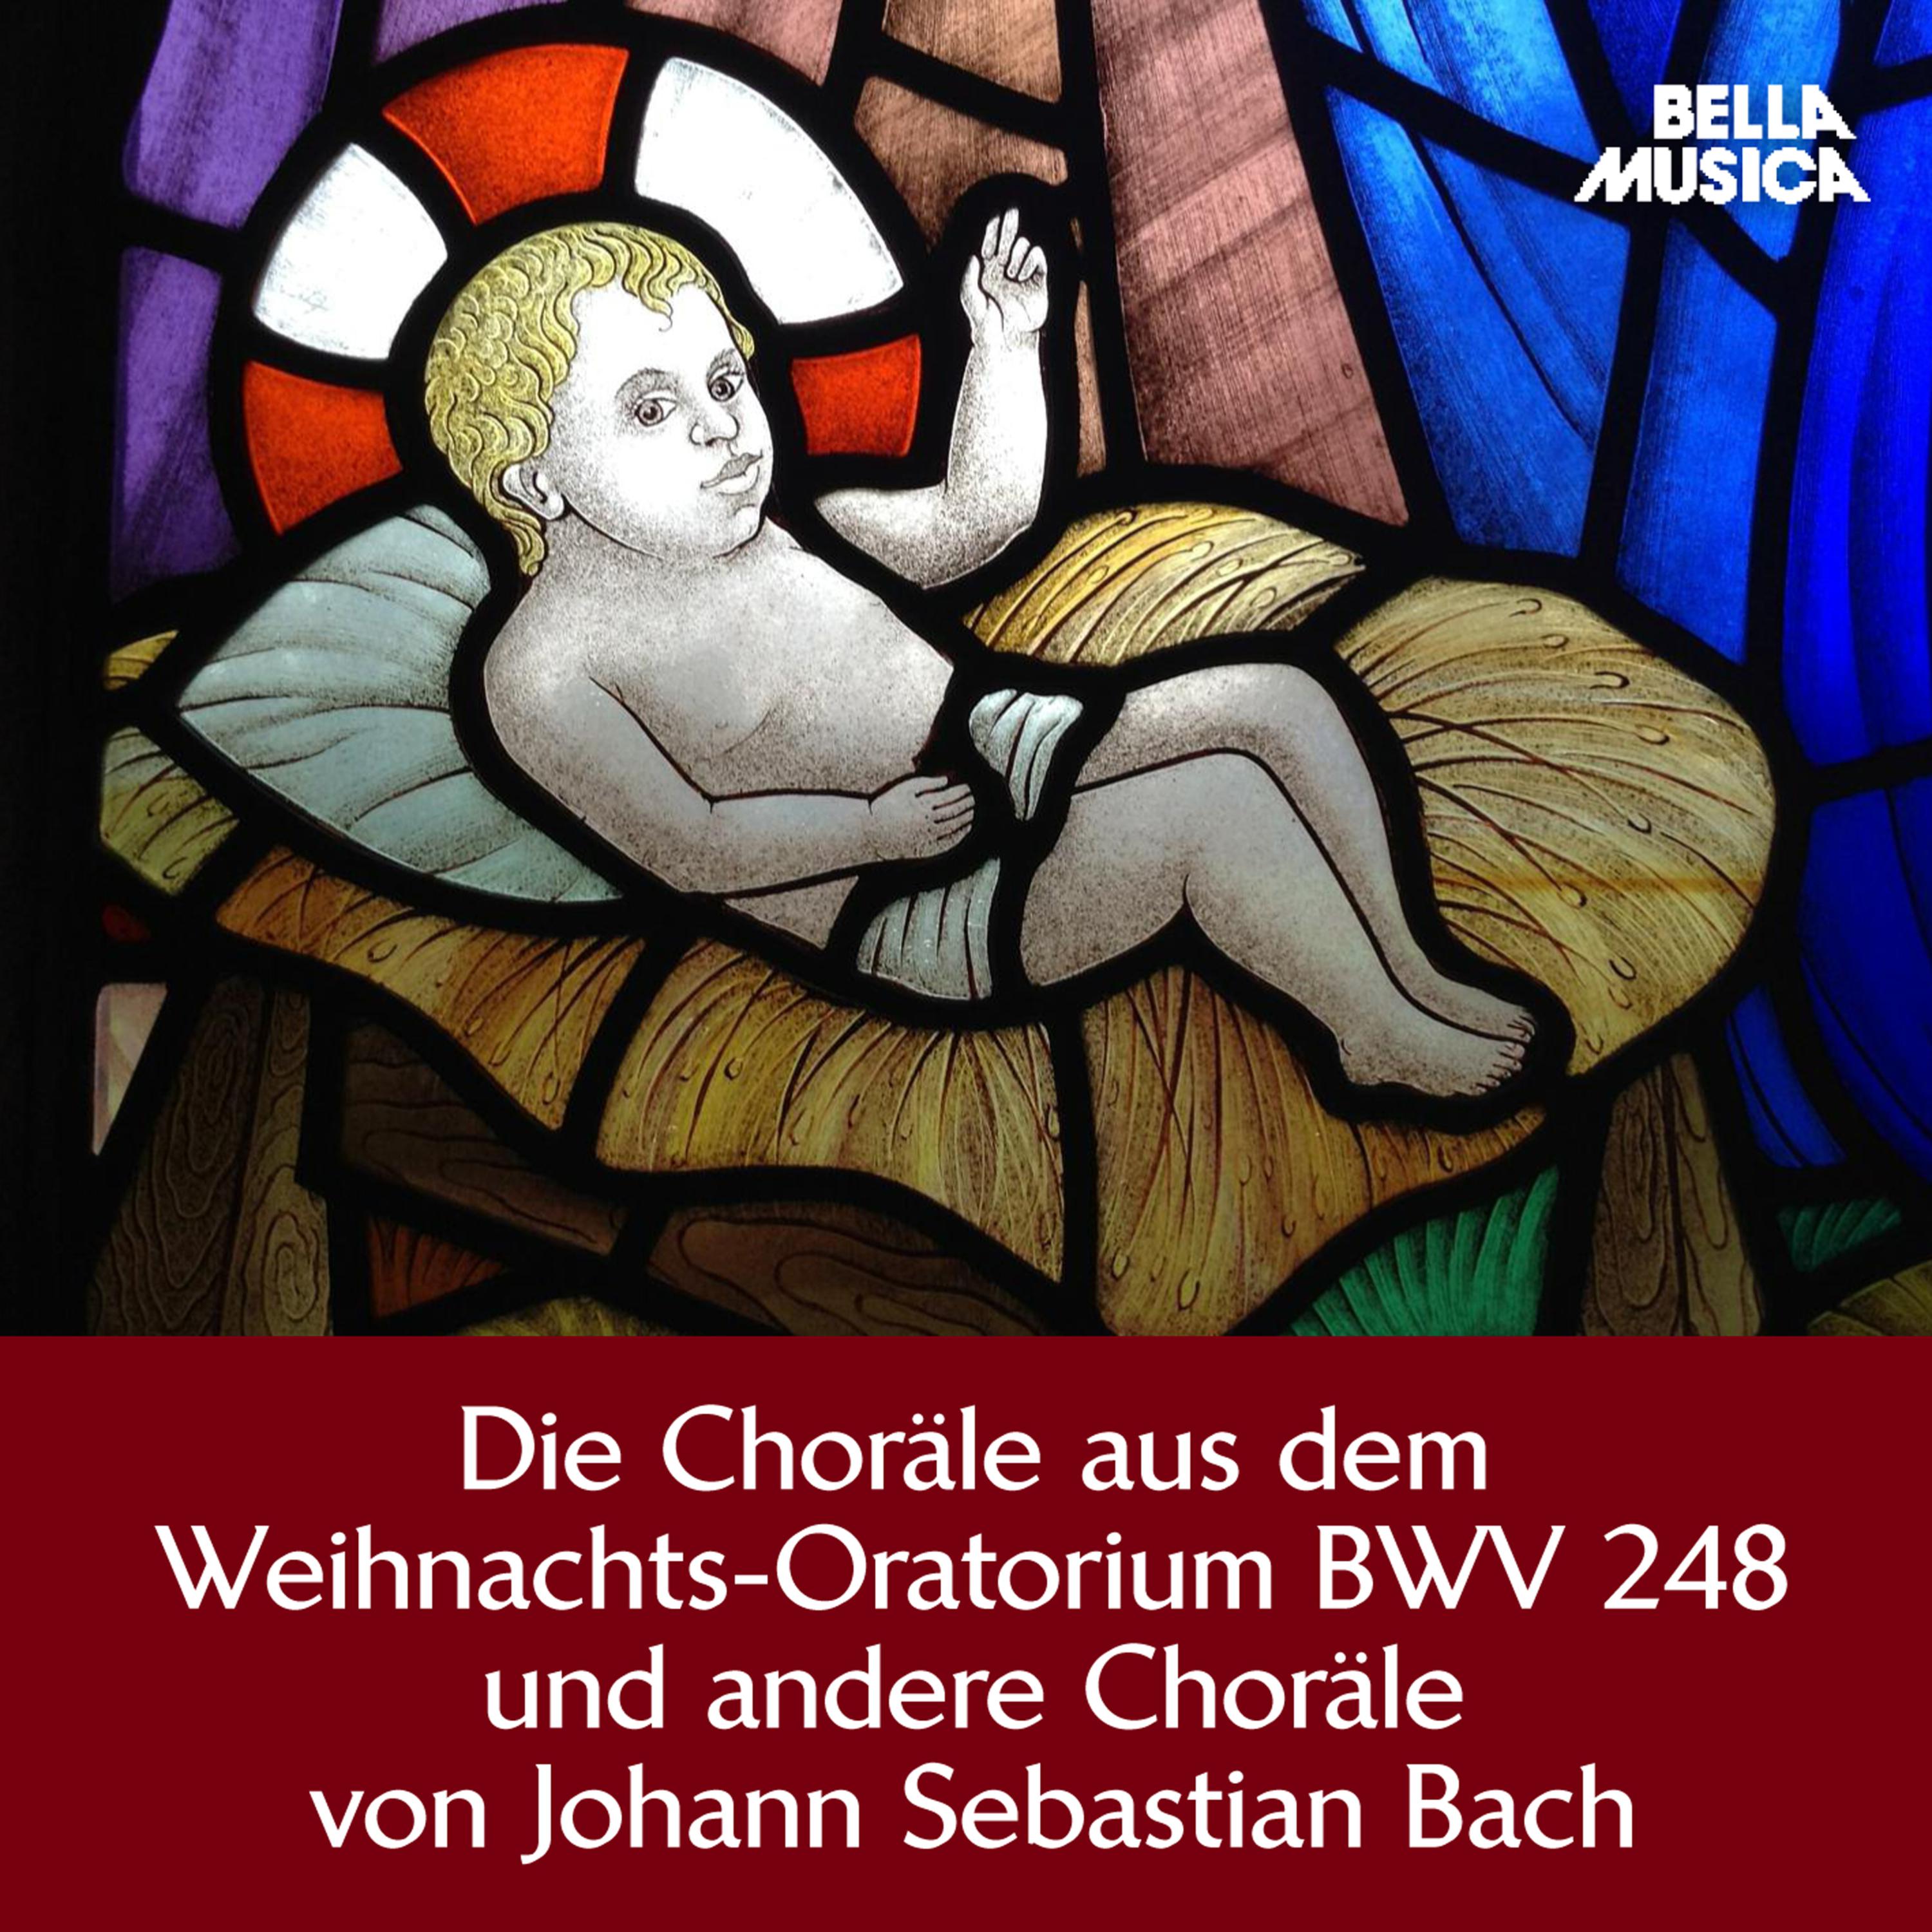 Weihnachts-Oratorium, BWV 248, Teil 2, Am 2. Heiligen Weynachts-Feyertage: Wir singen dir in deinem Heer